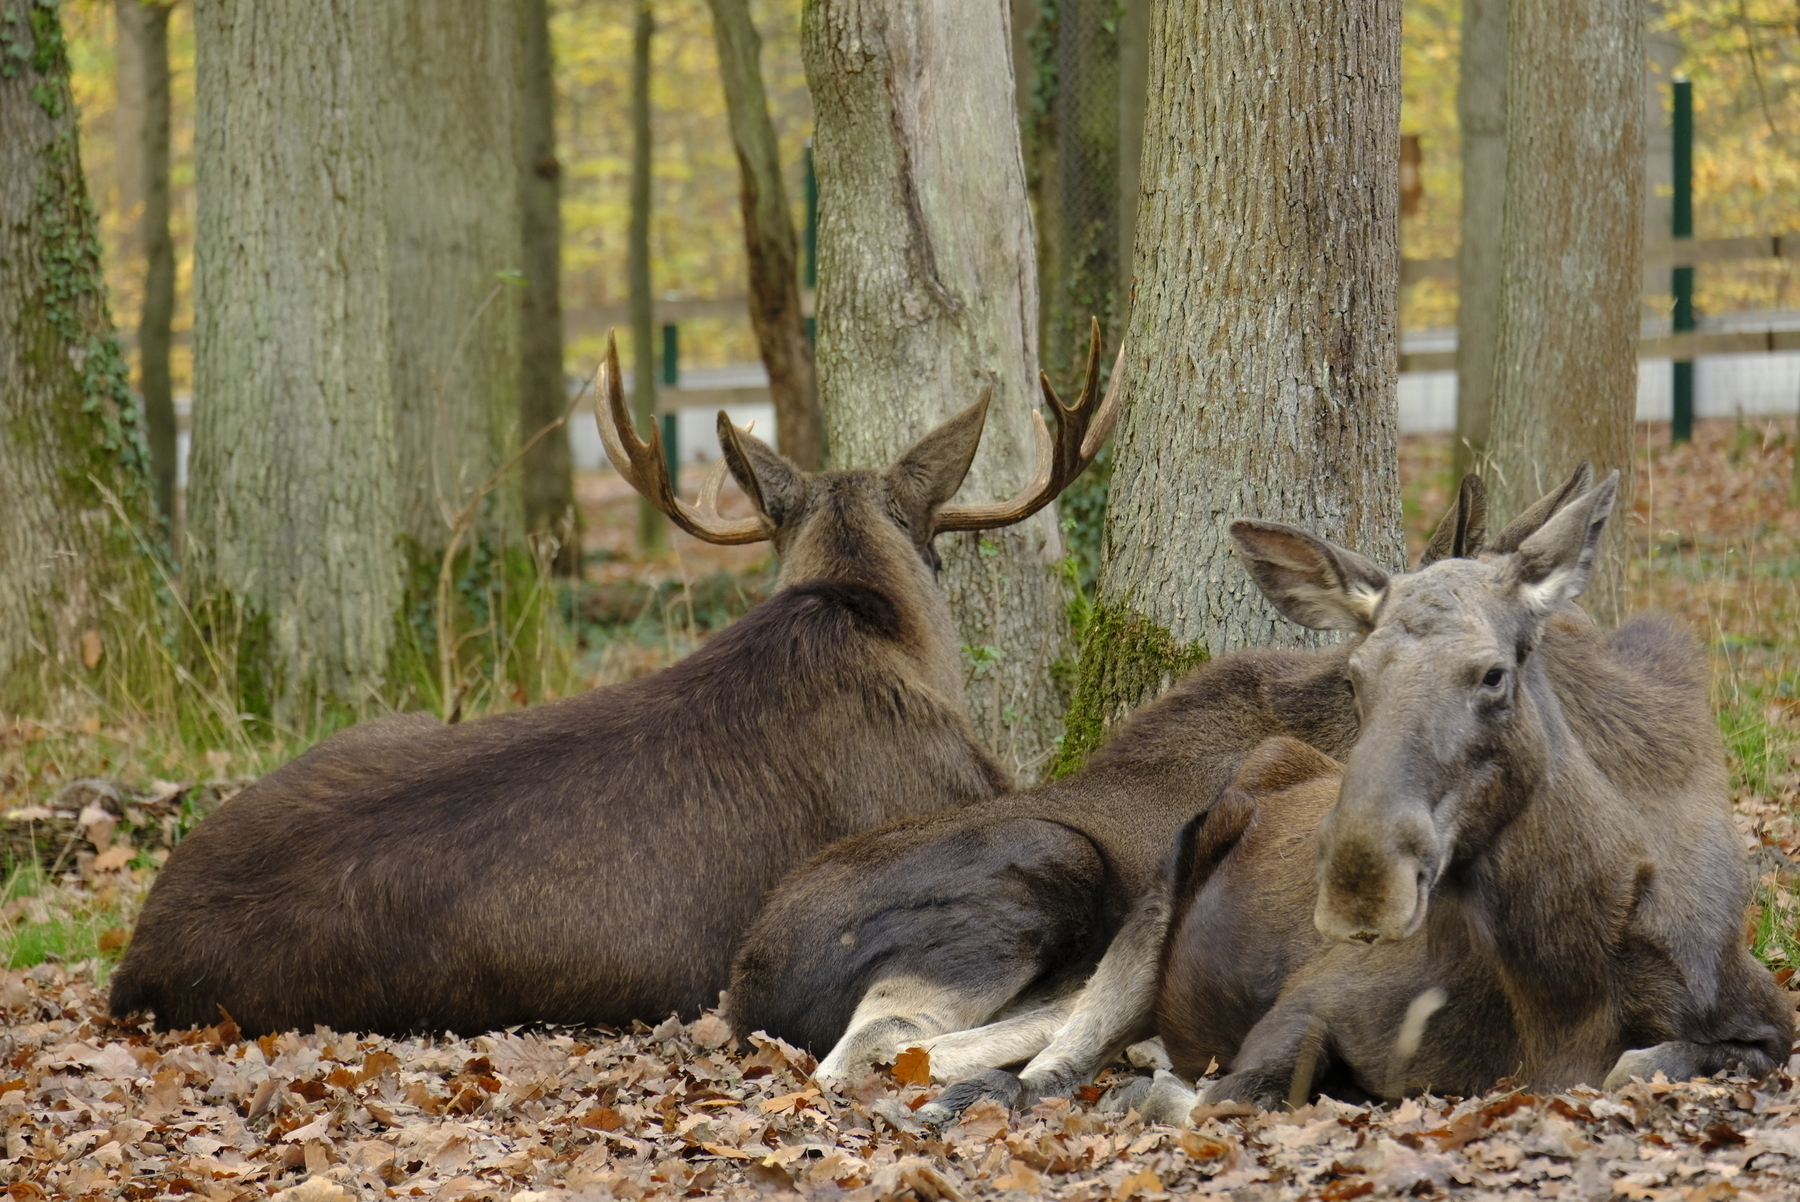 A herd of elks, chilling